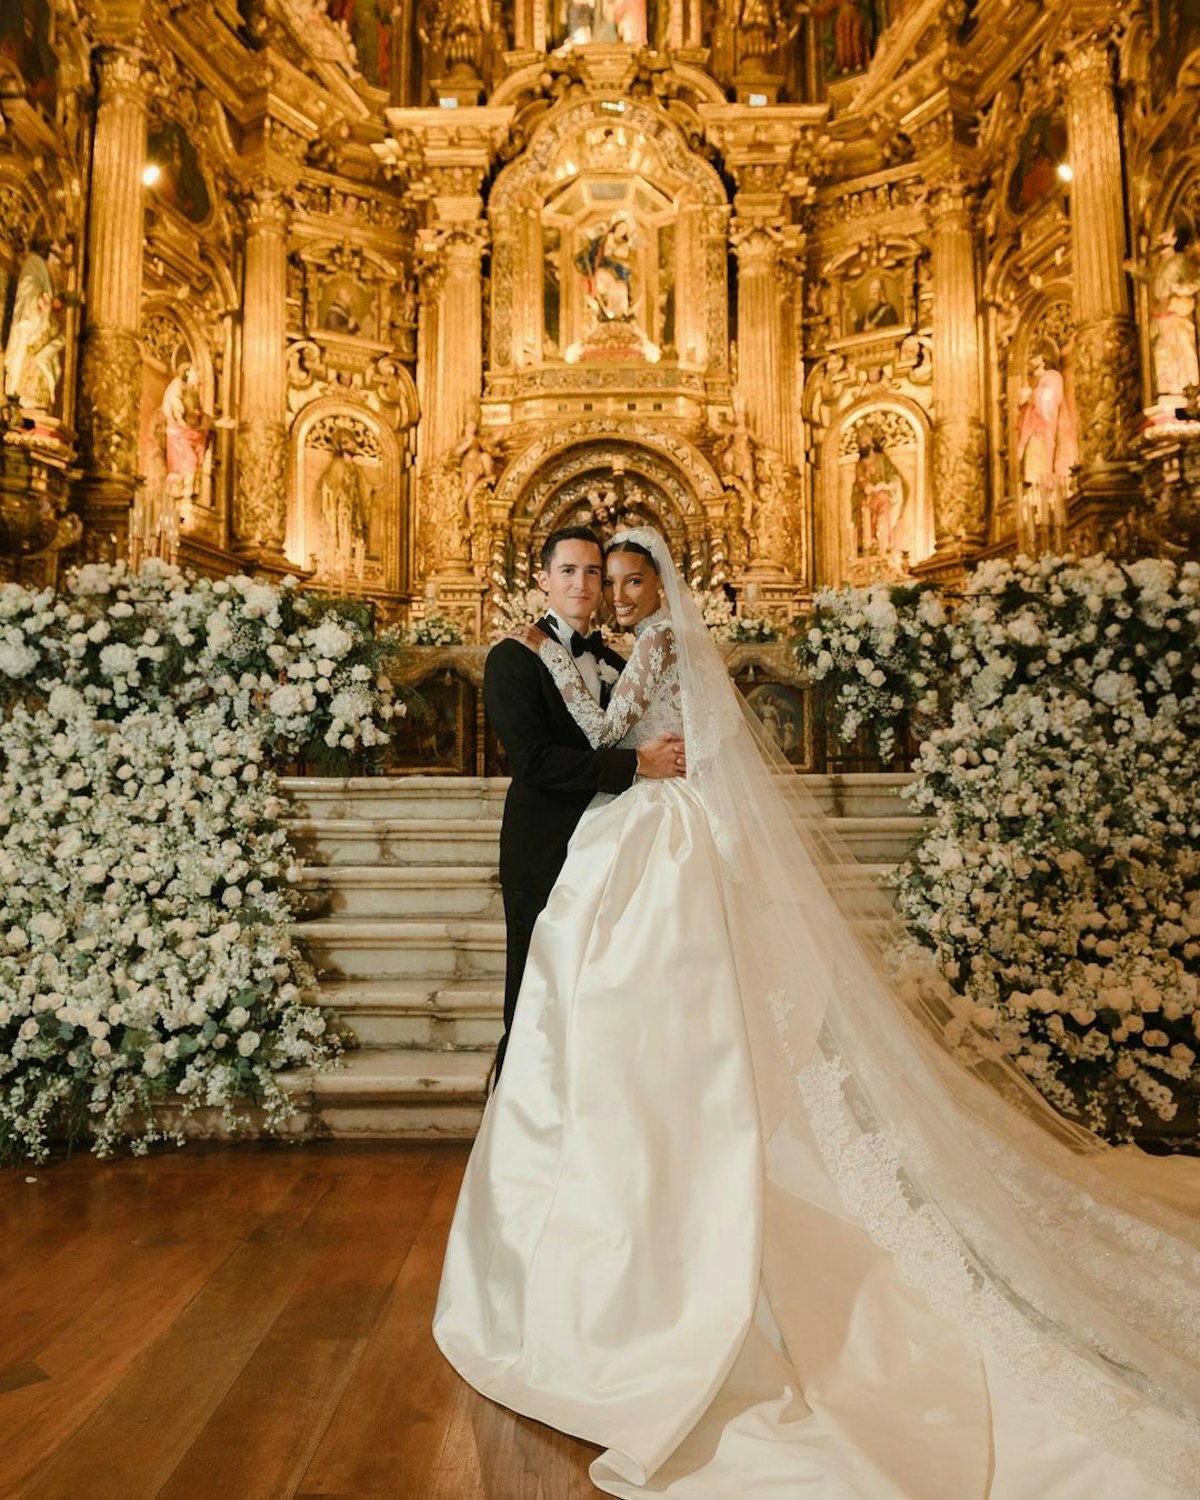 یاسمین توکس و خوان دیوید بوررو در روز عروسی خود